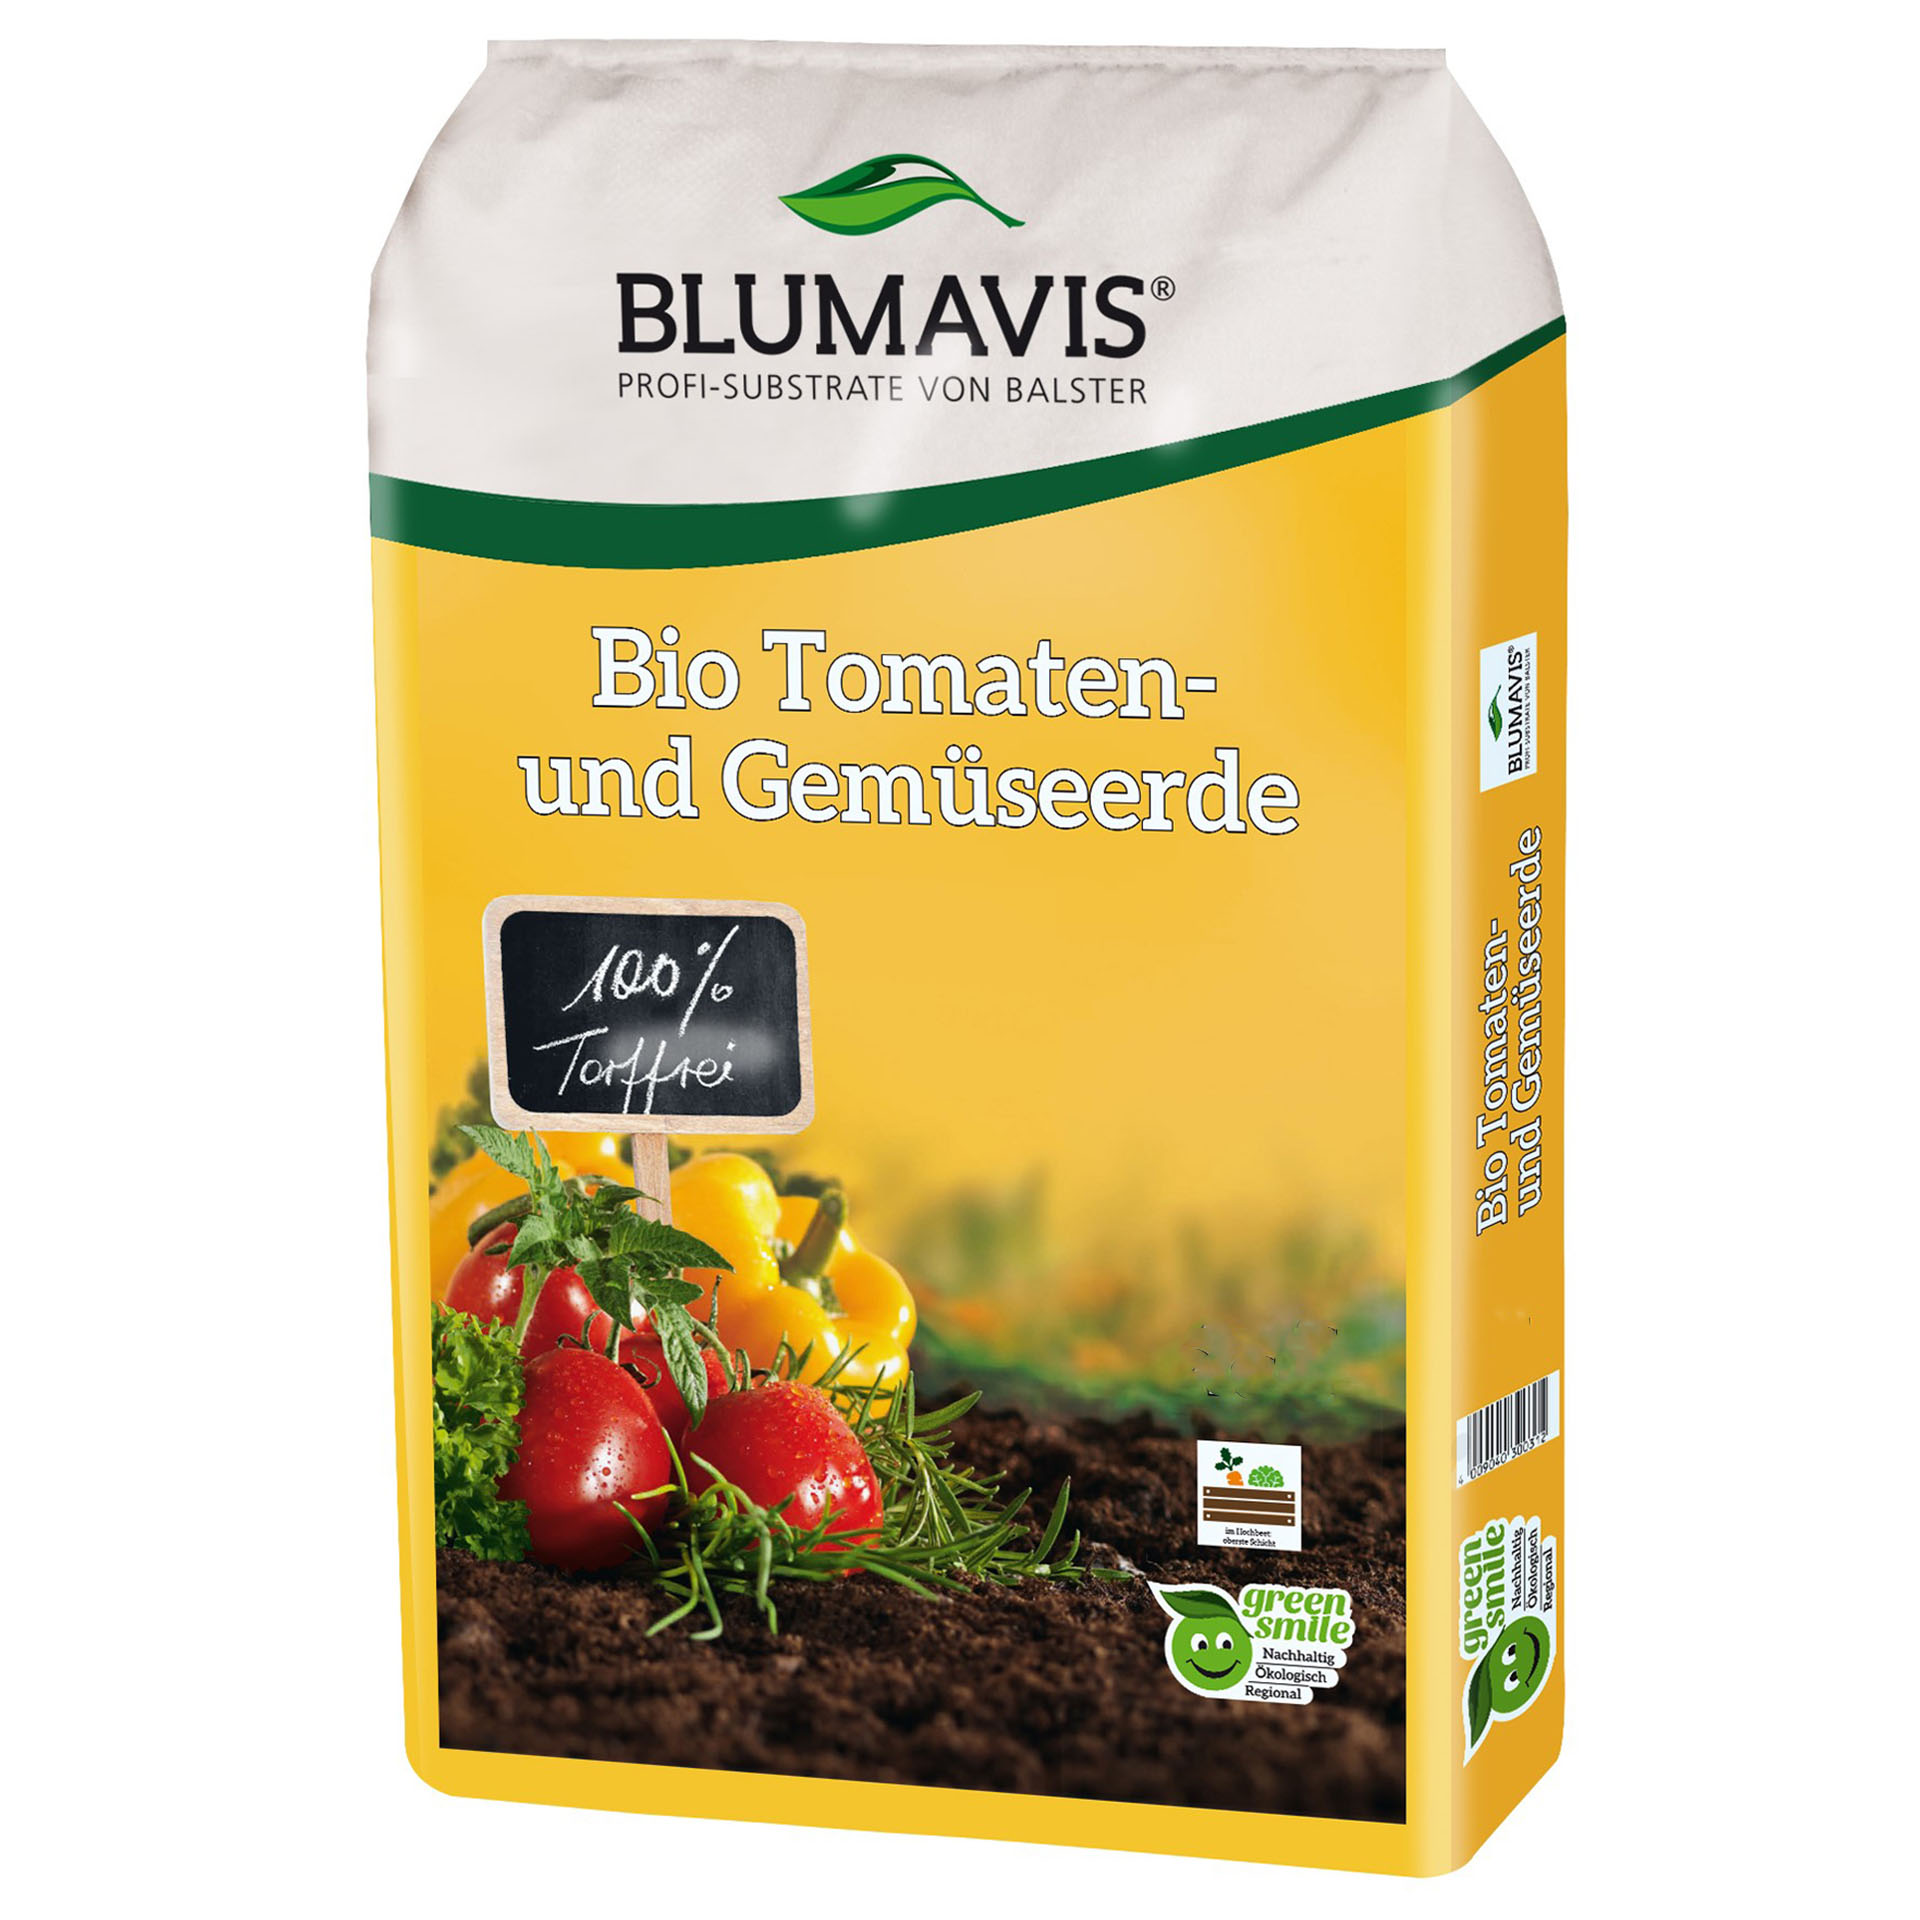 Blumavis® BIO Tomaten- und Gemüseerde torffrei